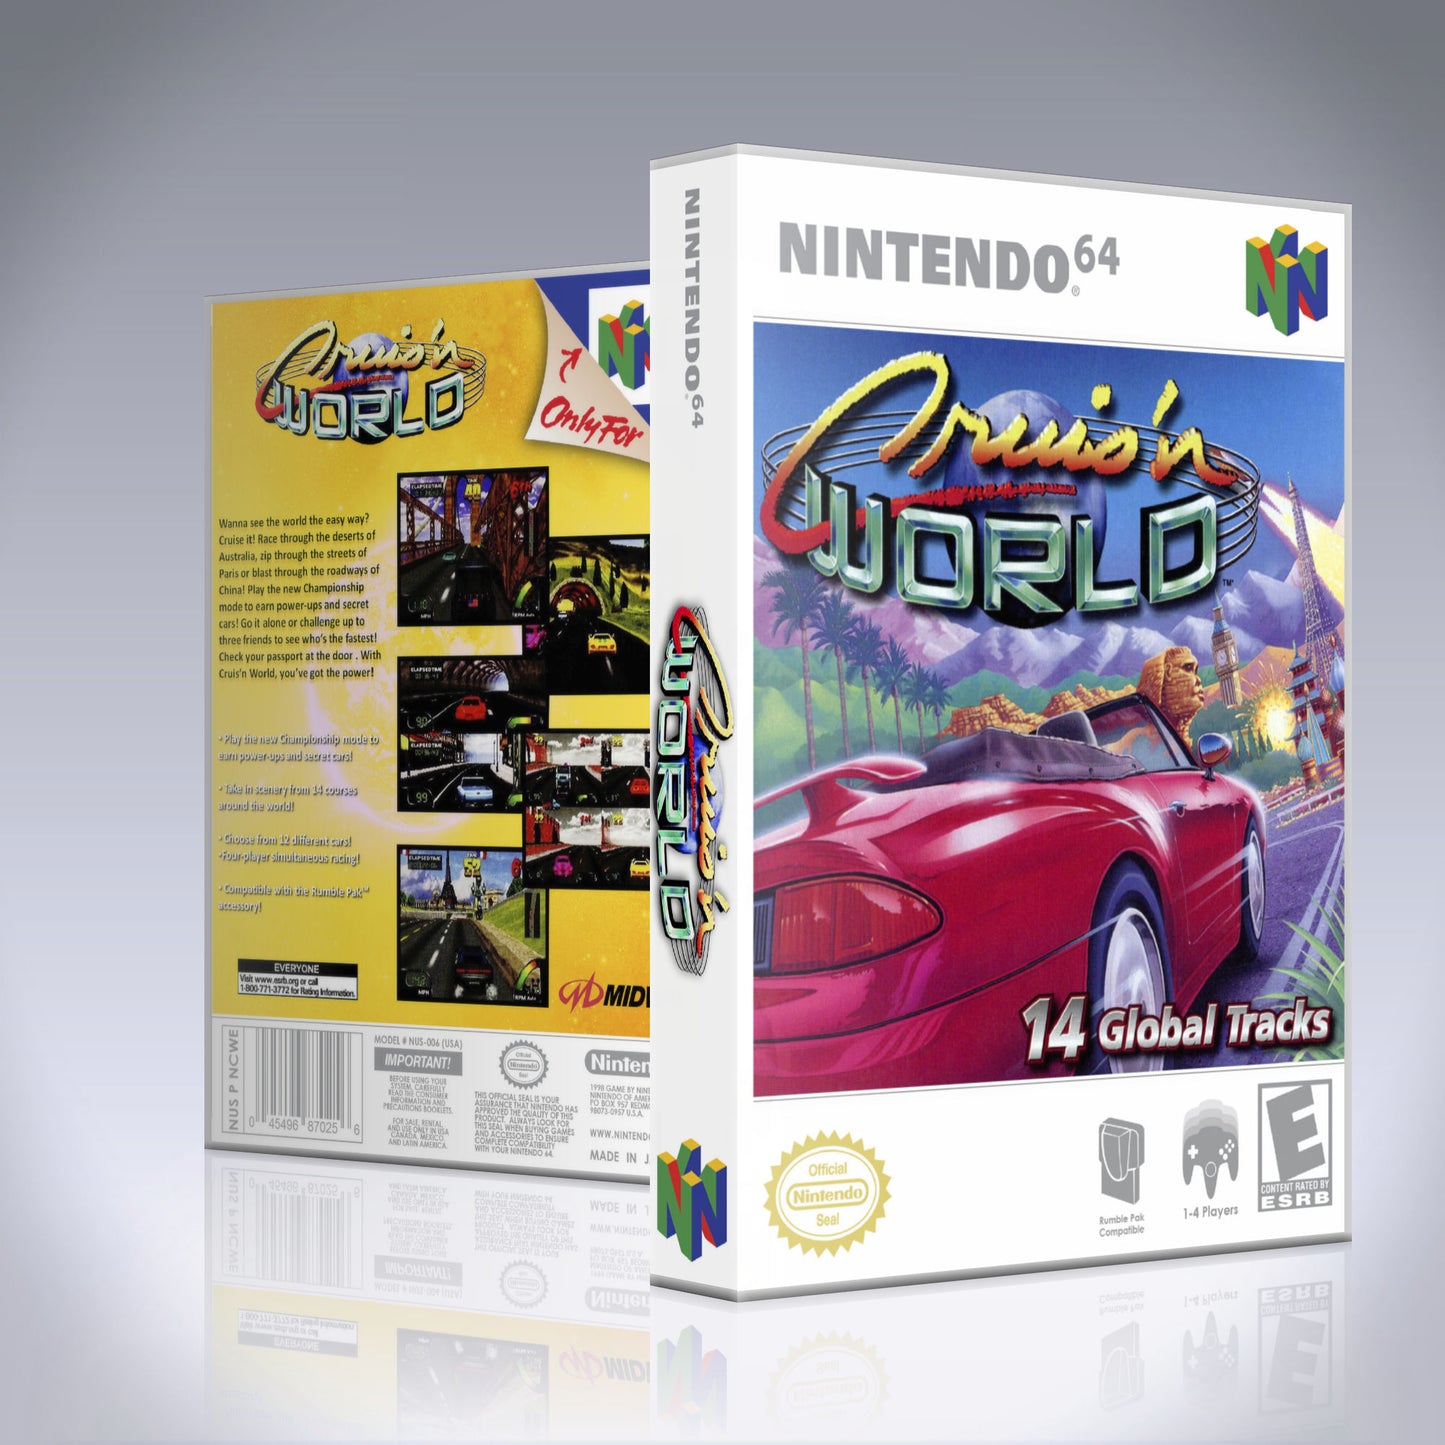 N64 Universal Game Case - NO GAME - Cruis'n World